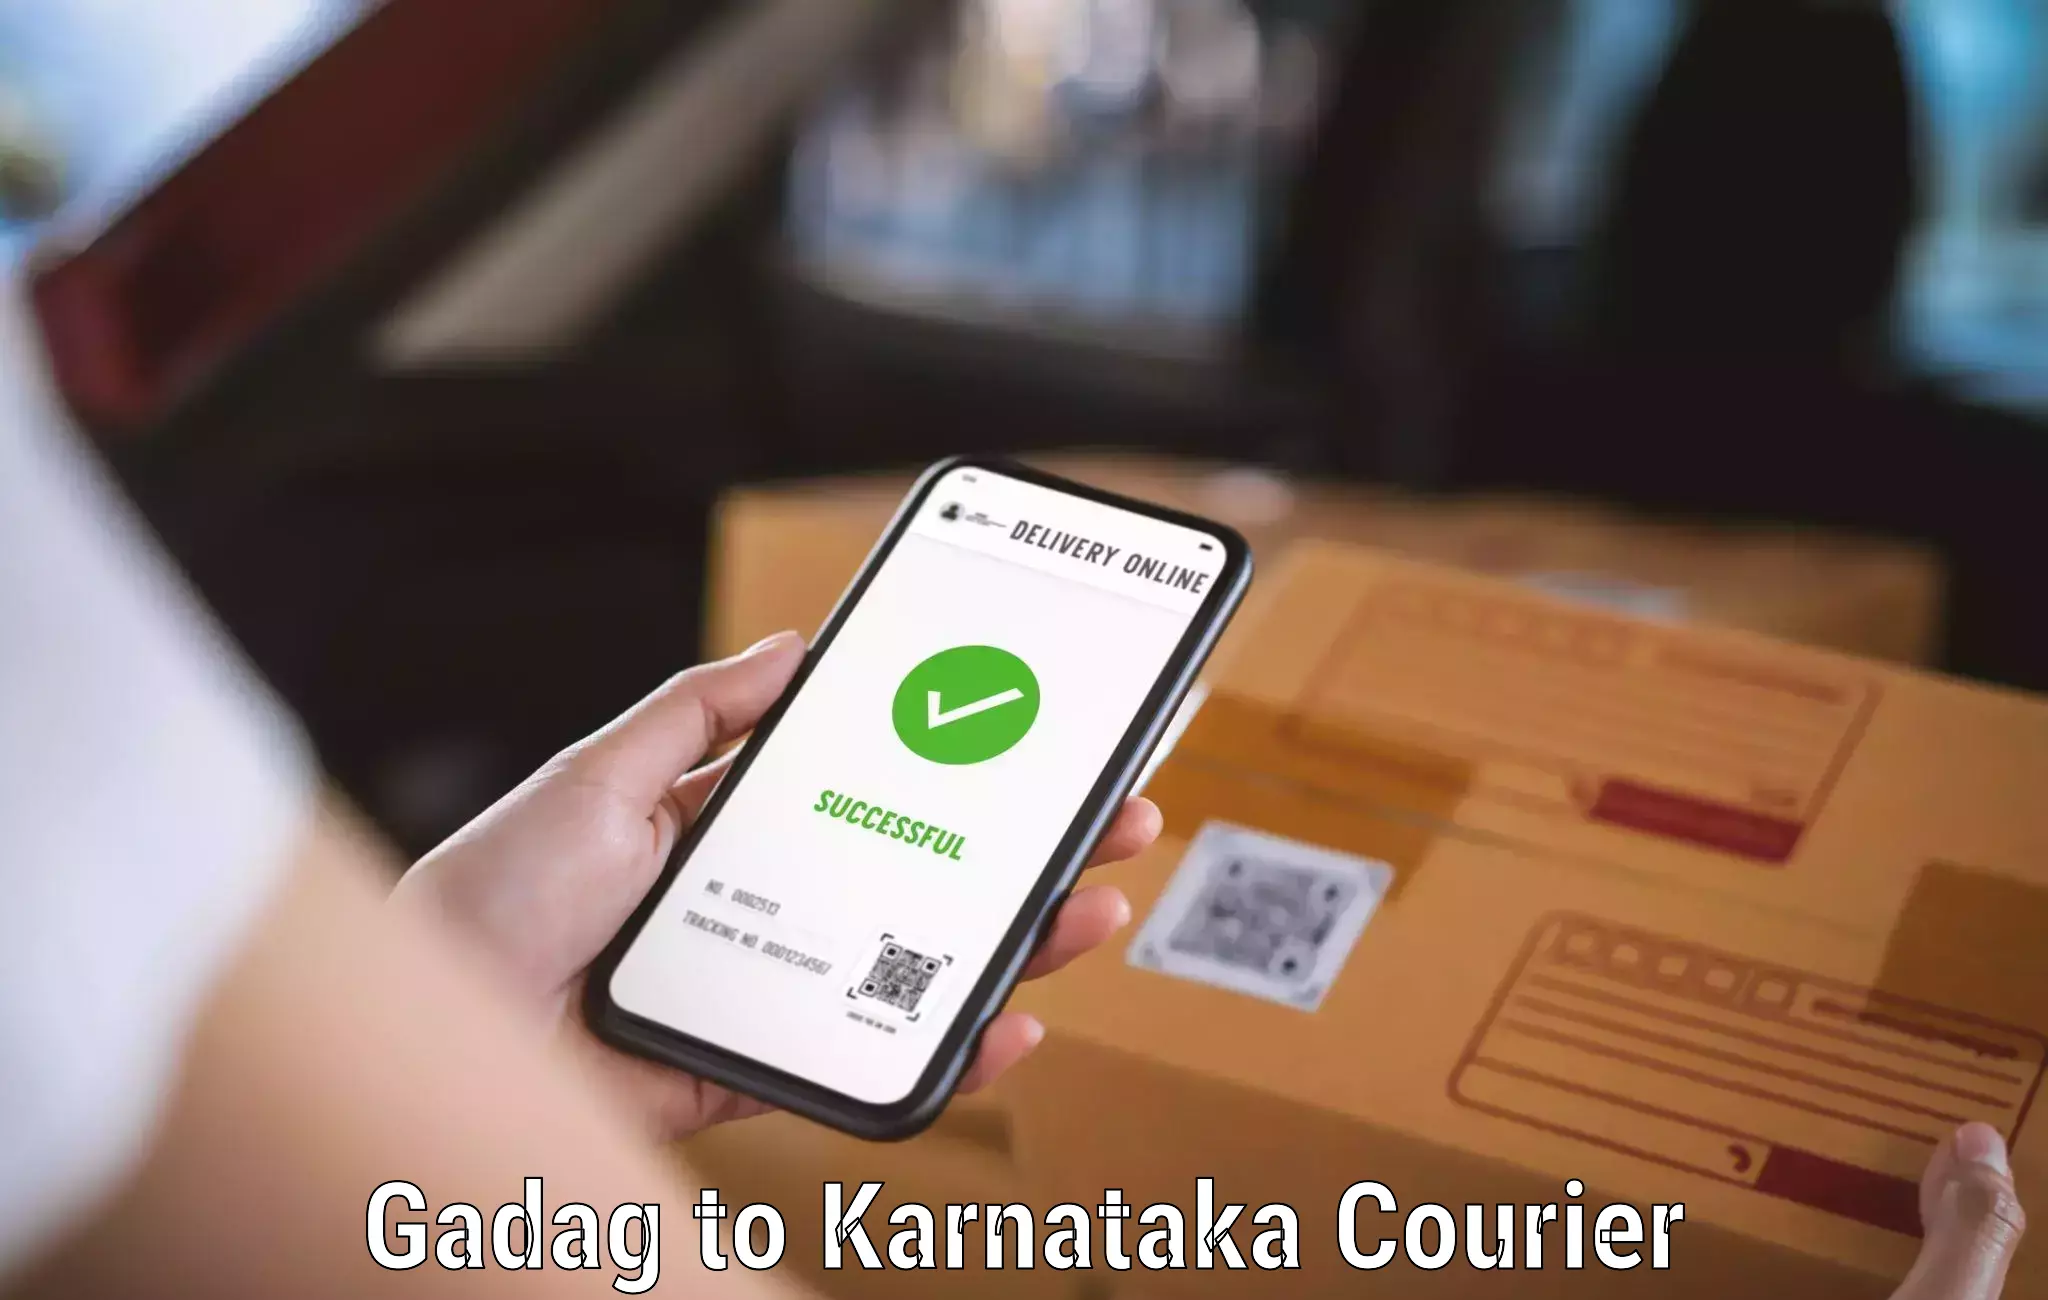 Affordable logistics services Gadag to Kanjarakatte